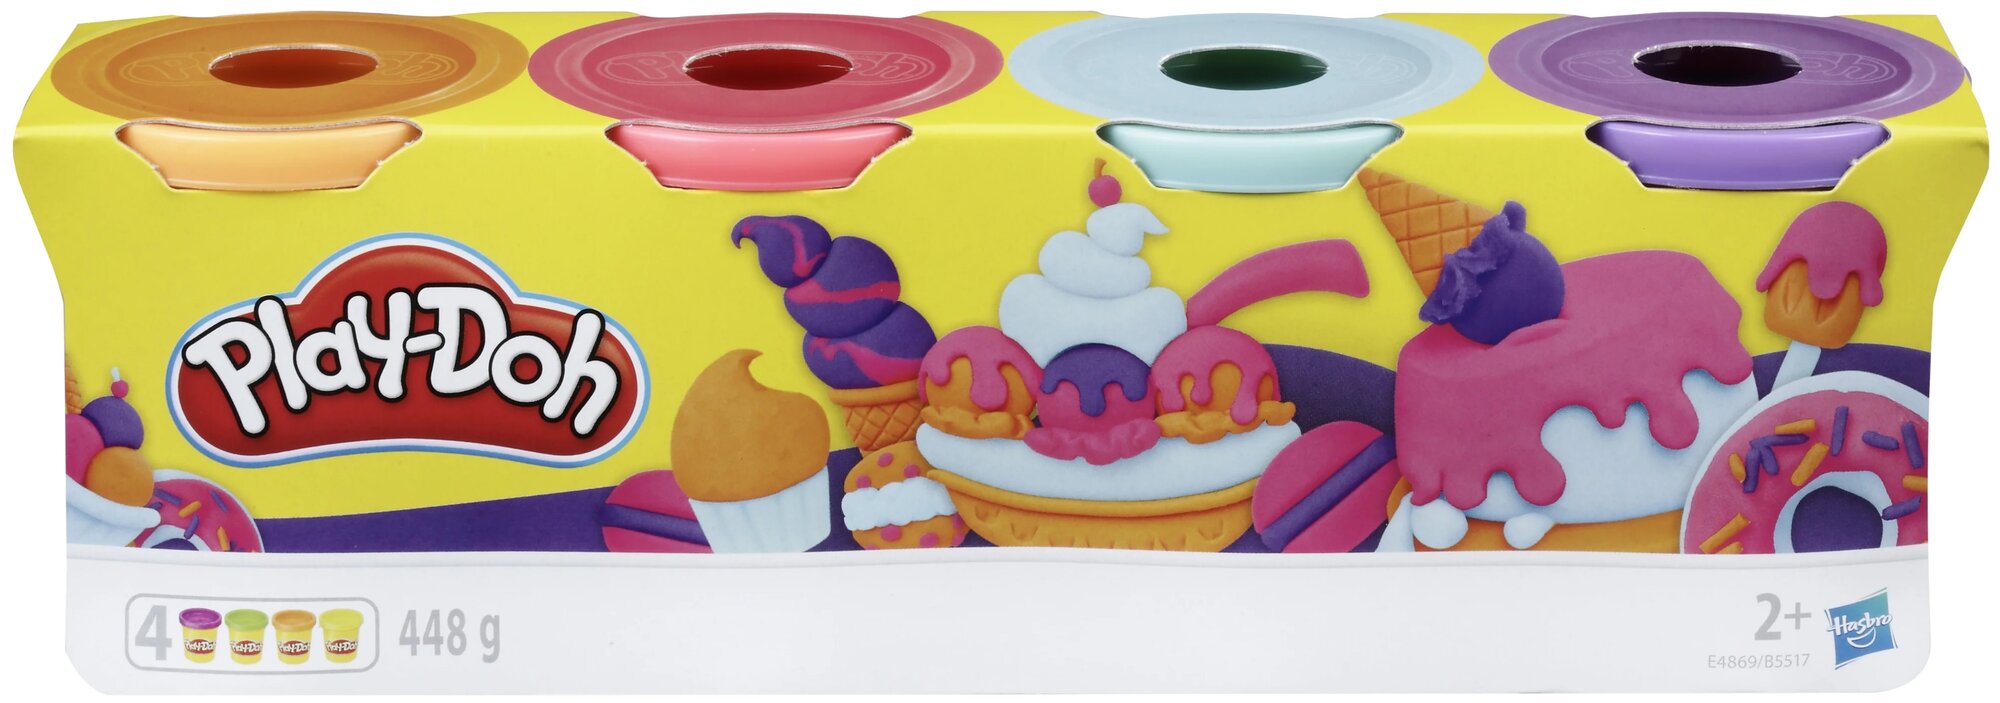 Масса для лепки Play-Doh Набор 4 банки, пастельные цвета, 448 гр (E4869/B5517)